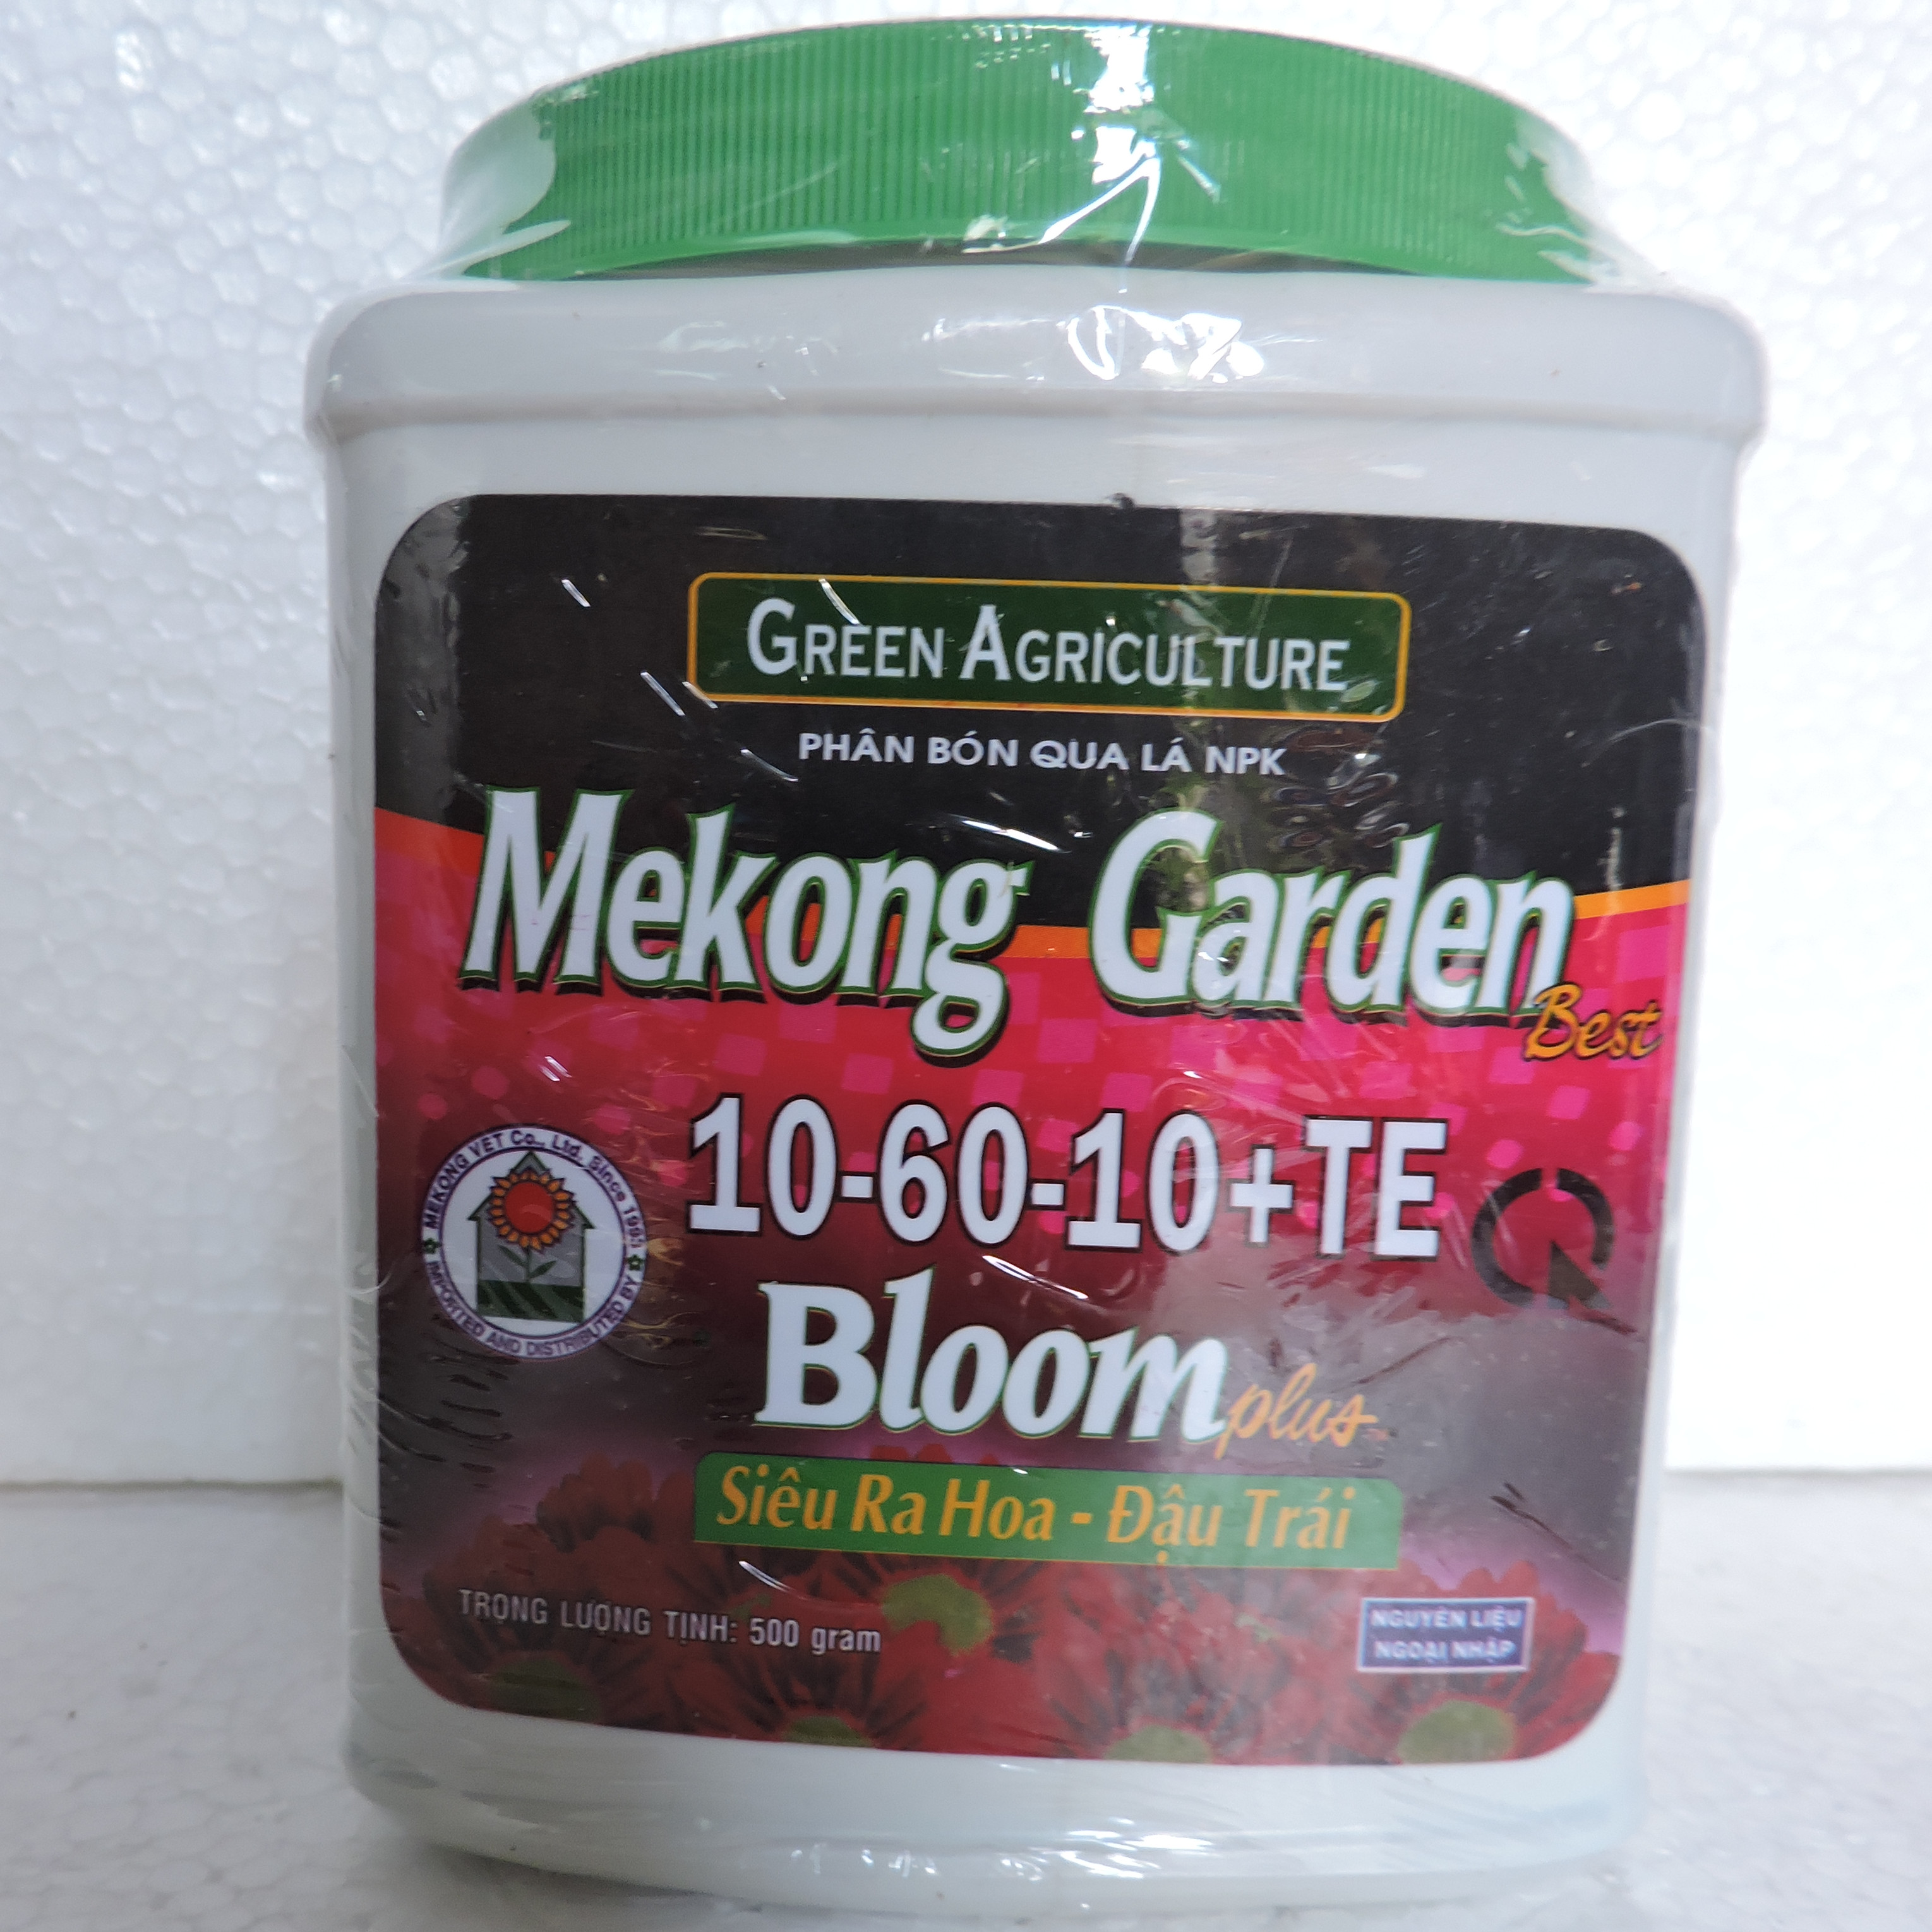 Phân Bón Lá NPK Mekong Garden 10 - 60 - 10 TE Bloom Plus Siêu Ra Hoa, Đậu Trái (500gr)